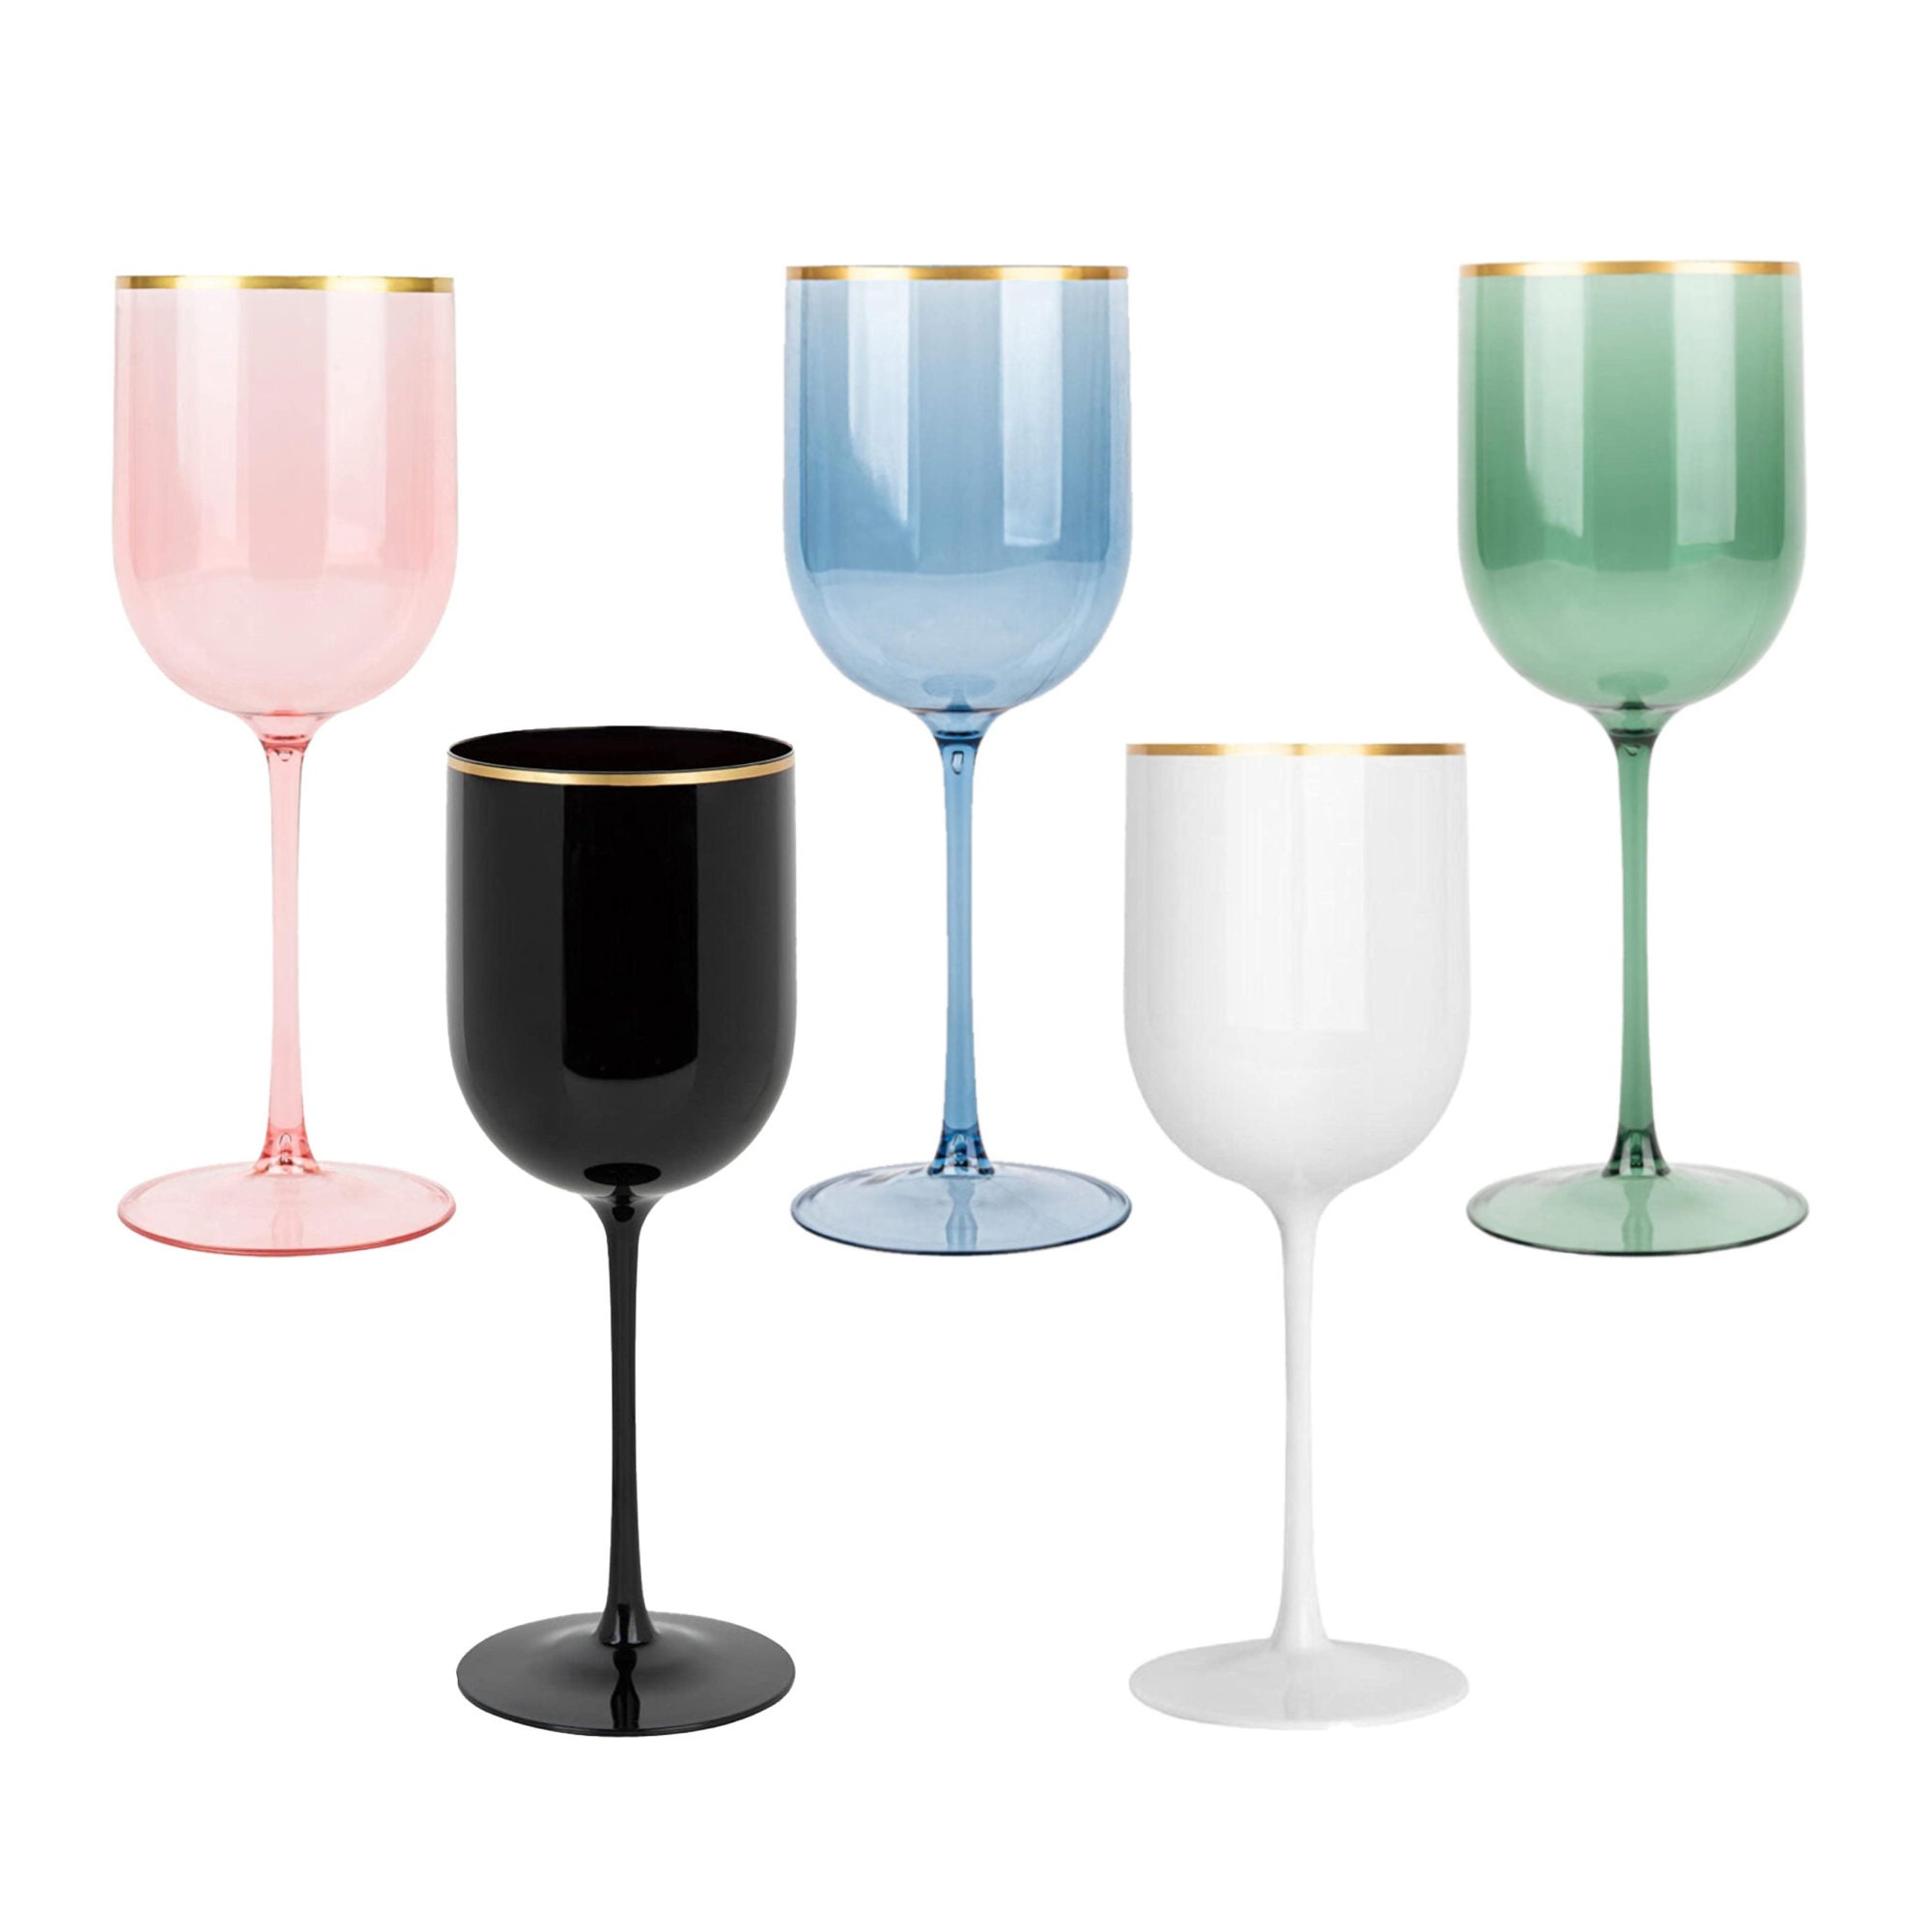 Emi-Yoshi Emi-Swg8 8 oz Square Disposable Plastic Long Stem Wine Glasses